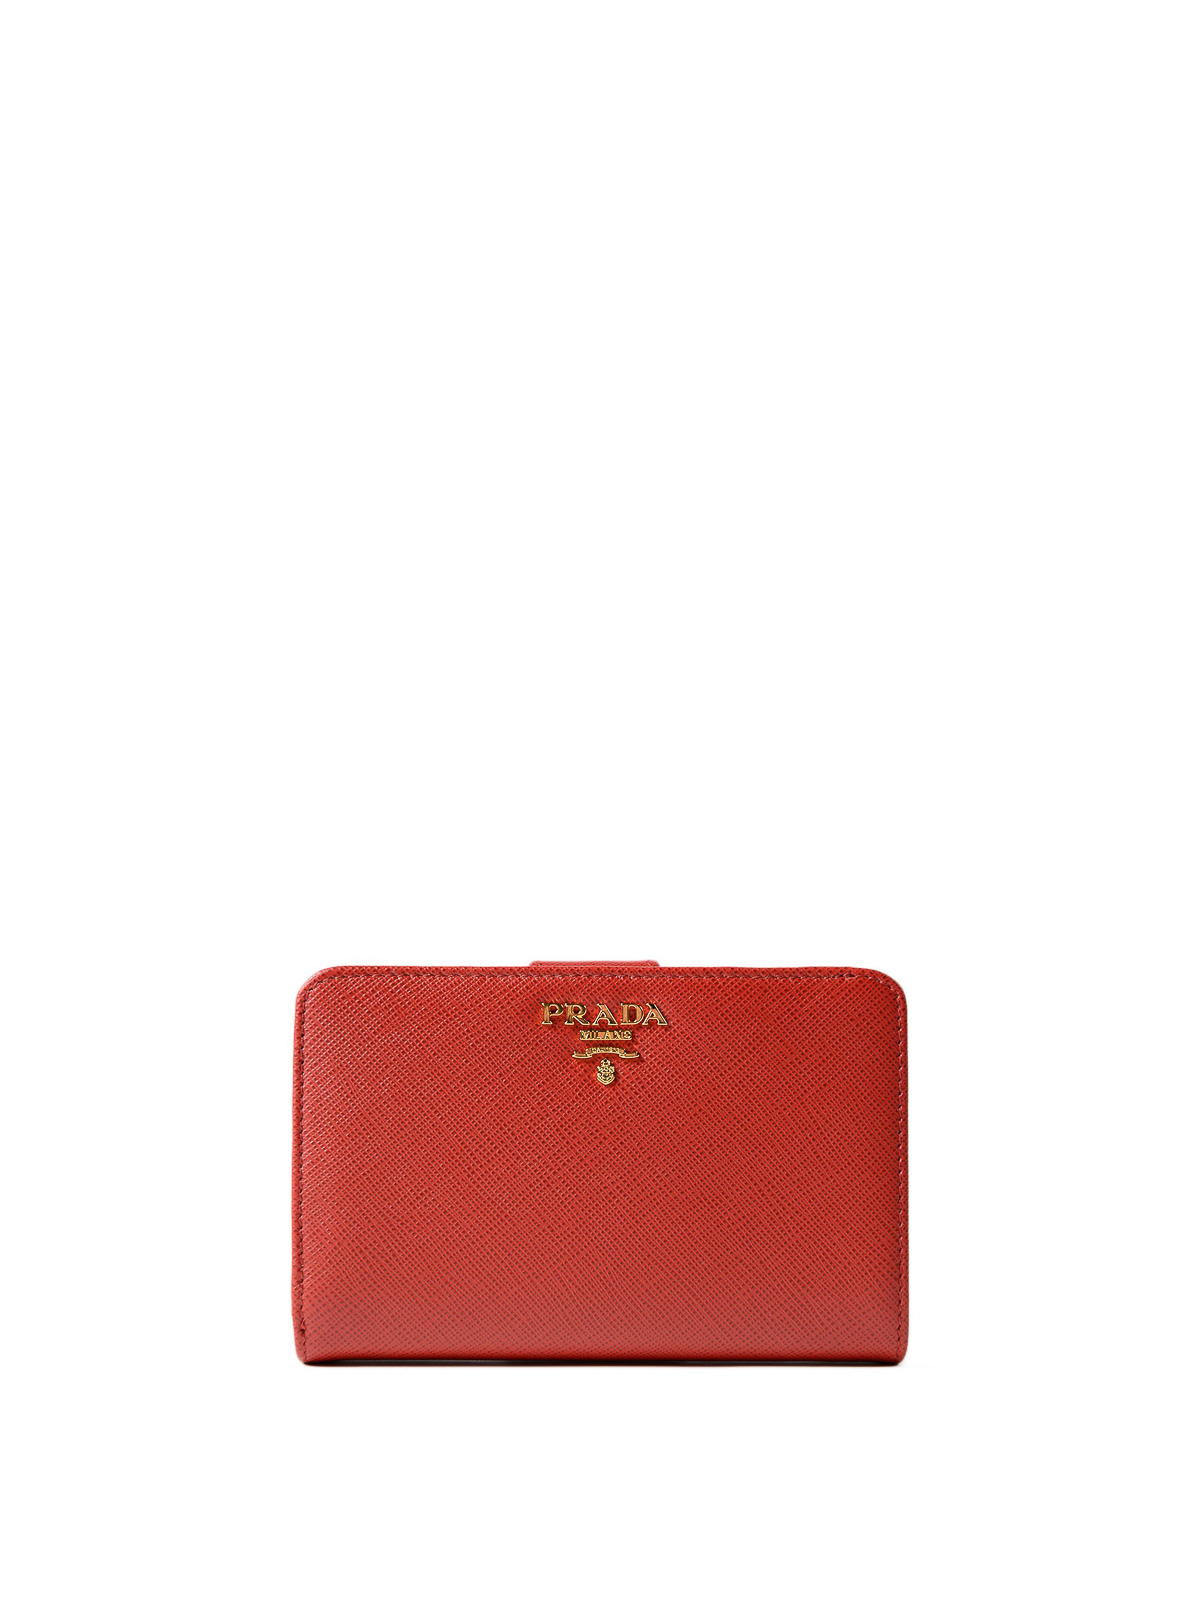 prada red saffiano wallet